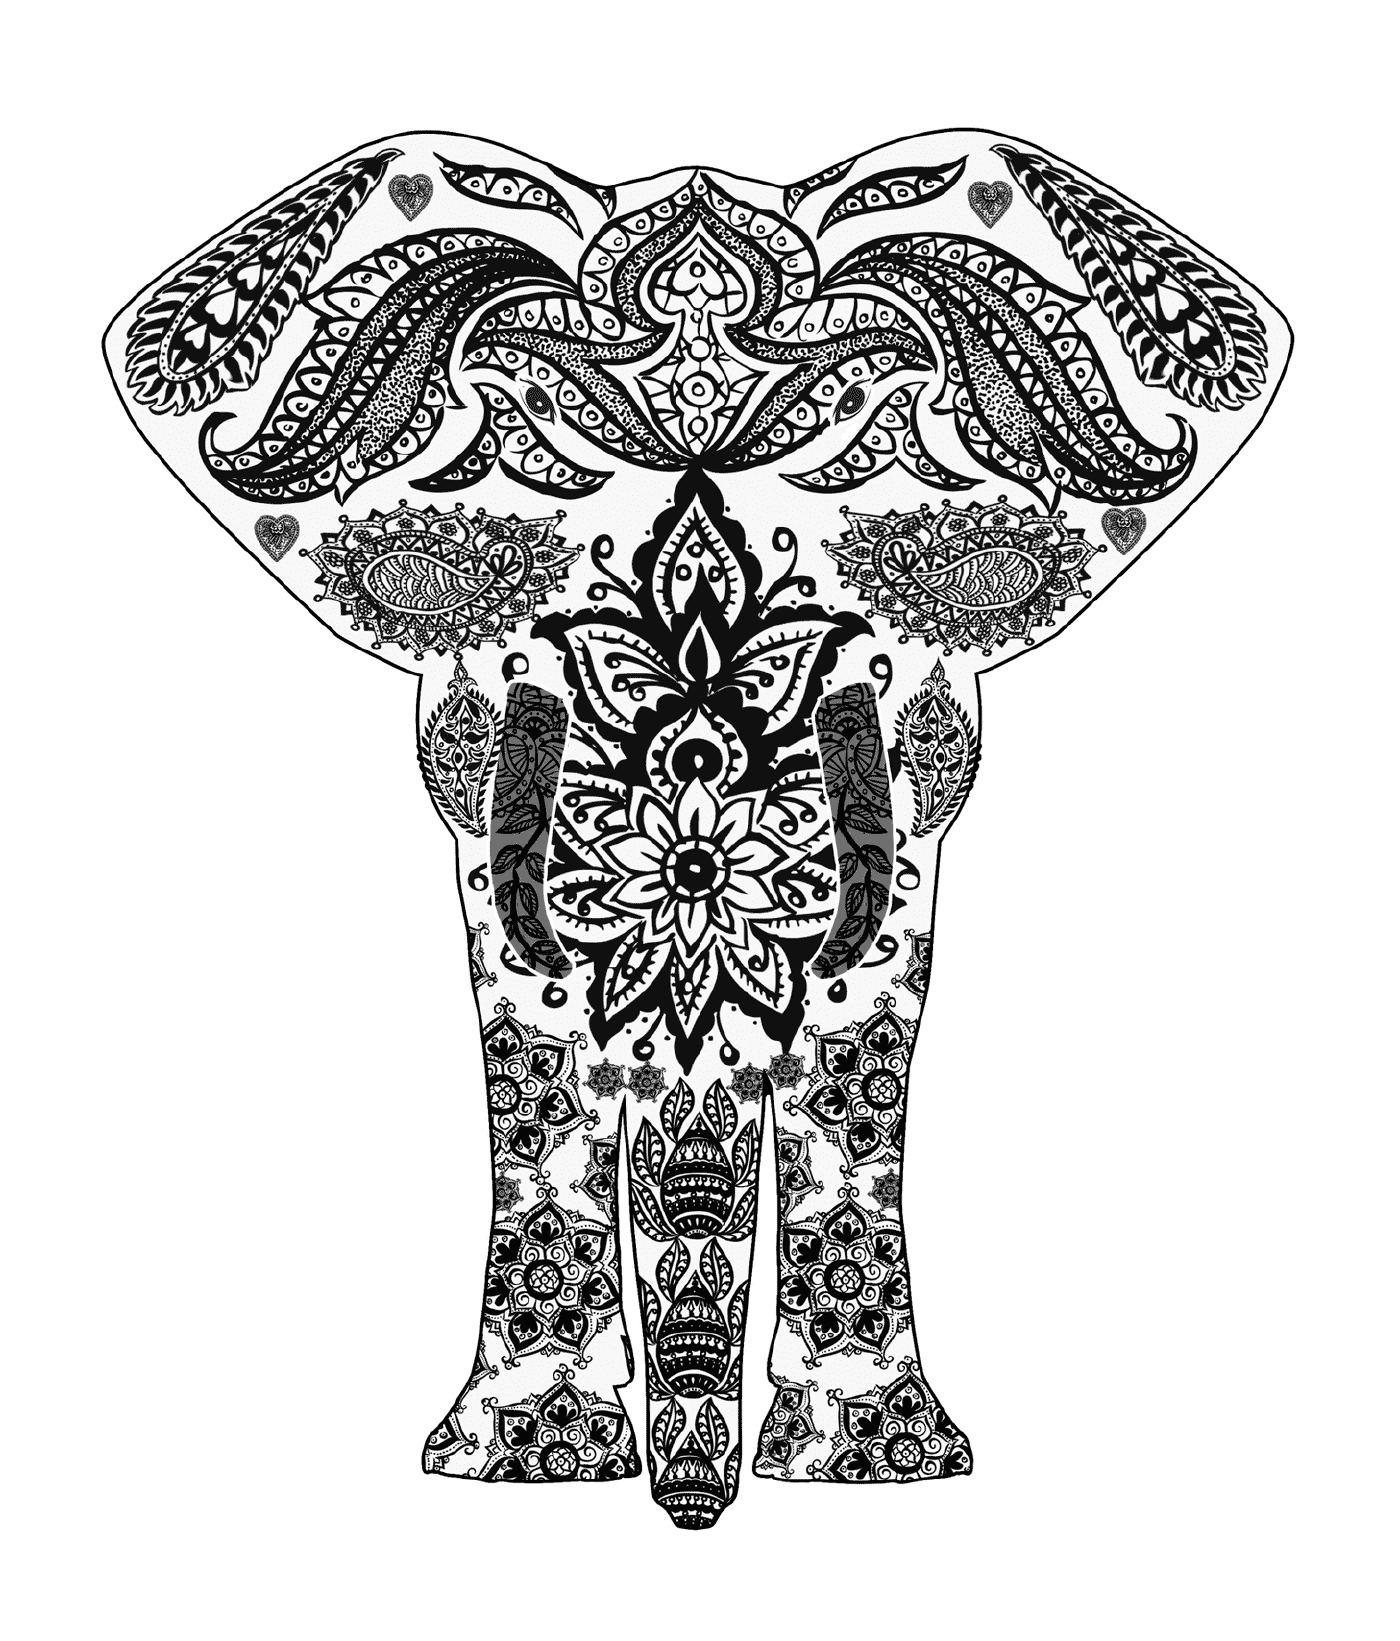  Слон со сложными схемами 